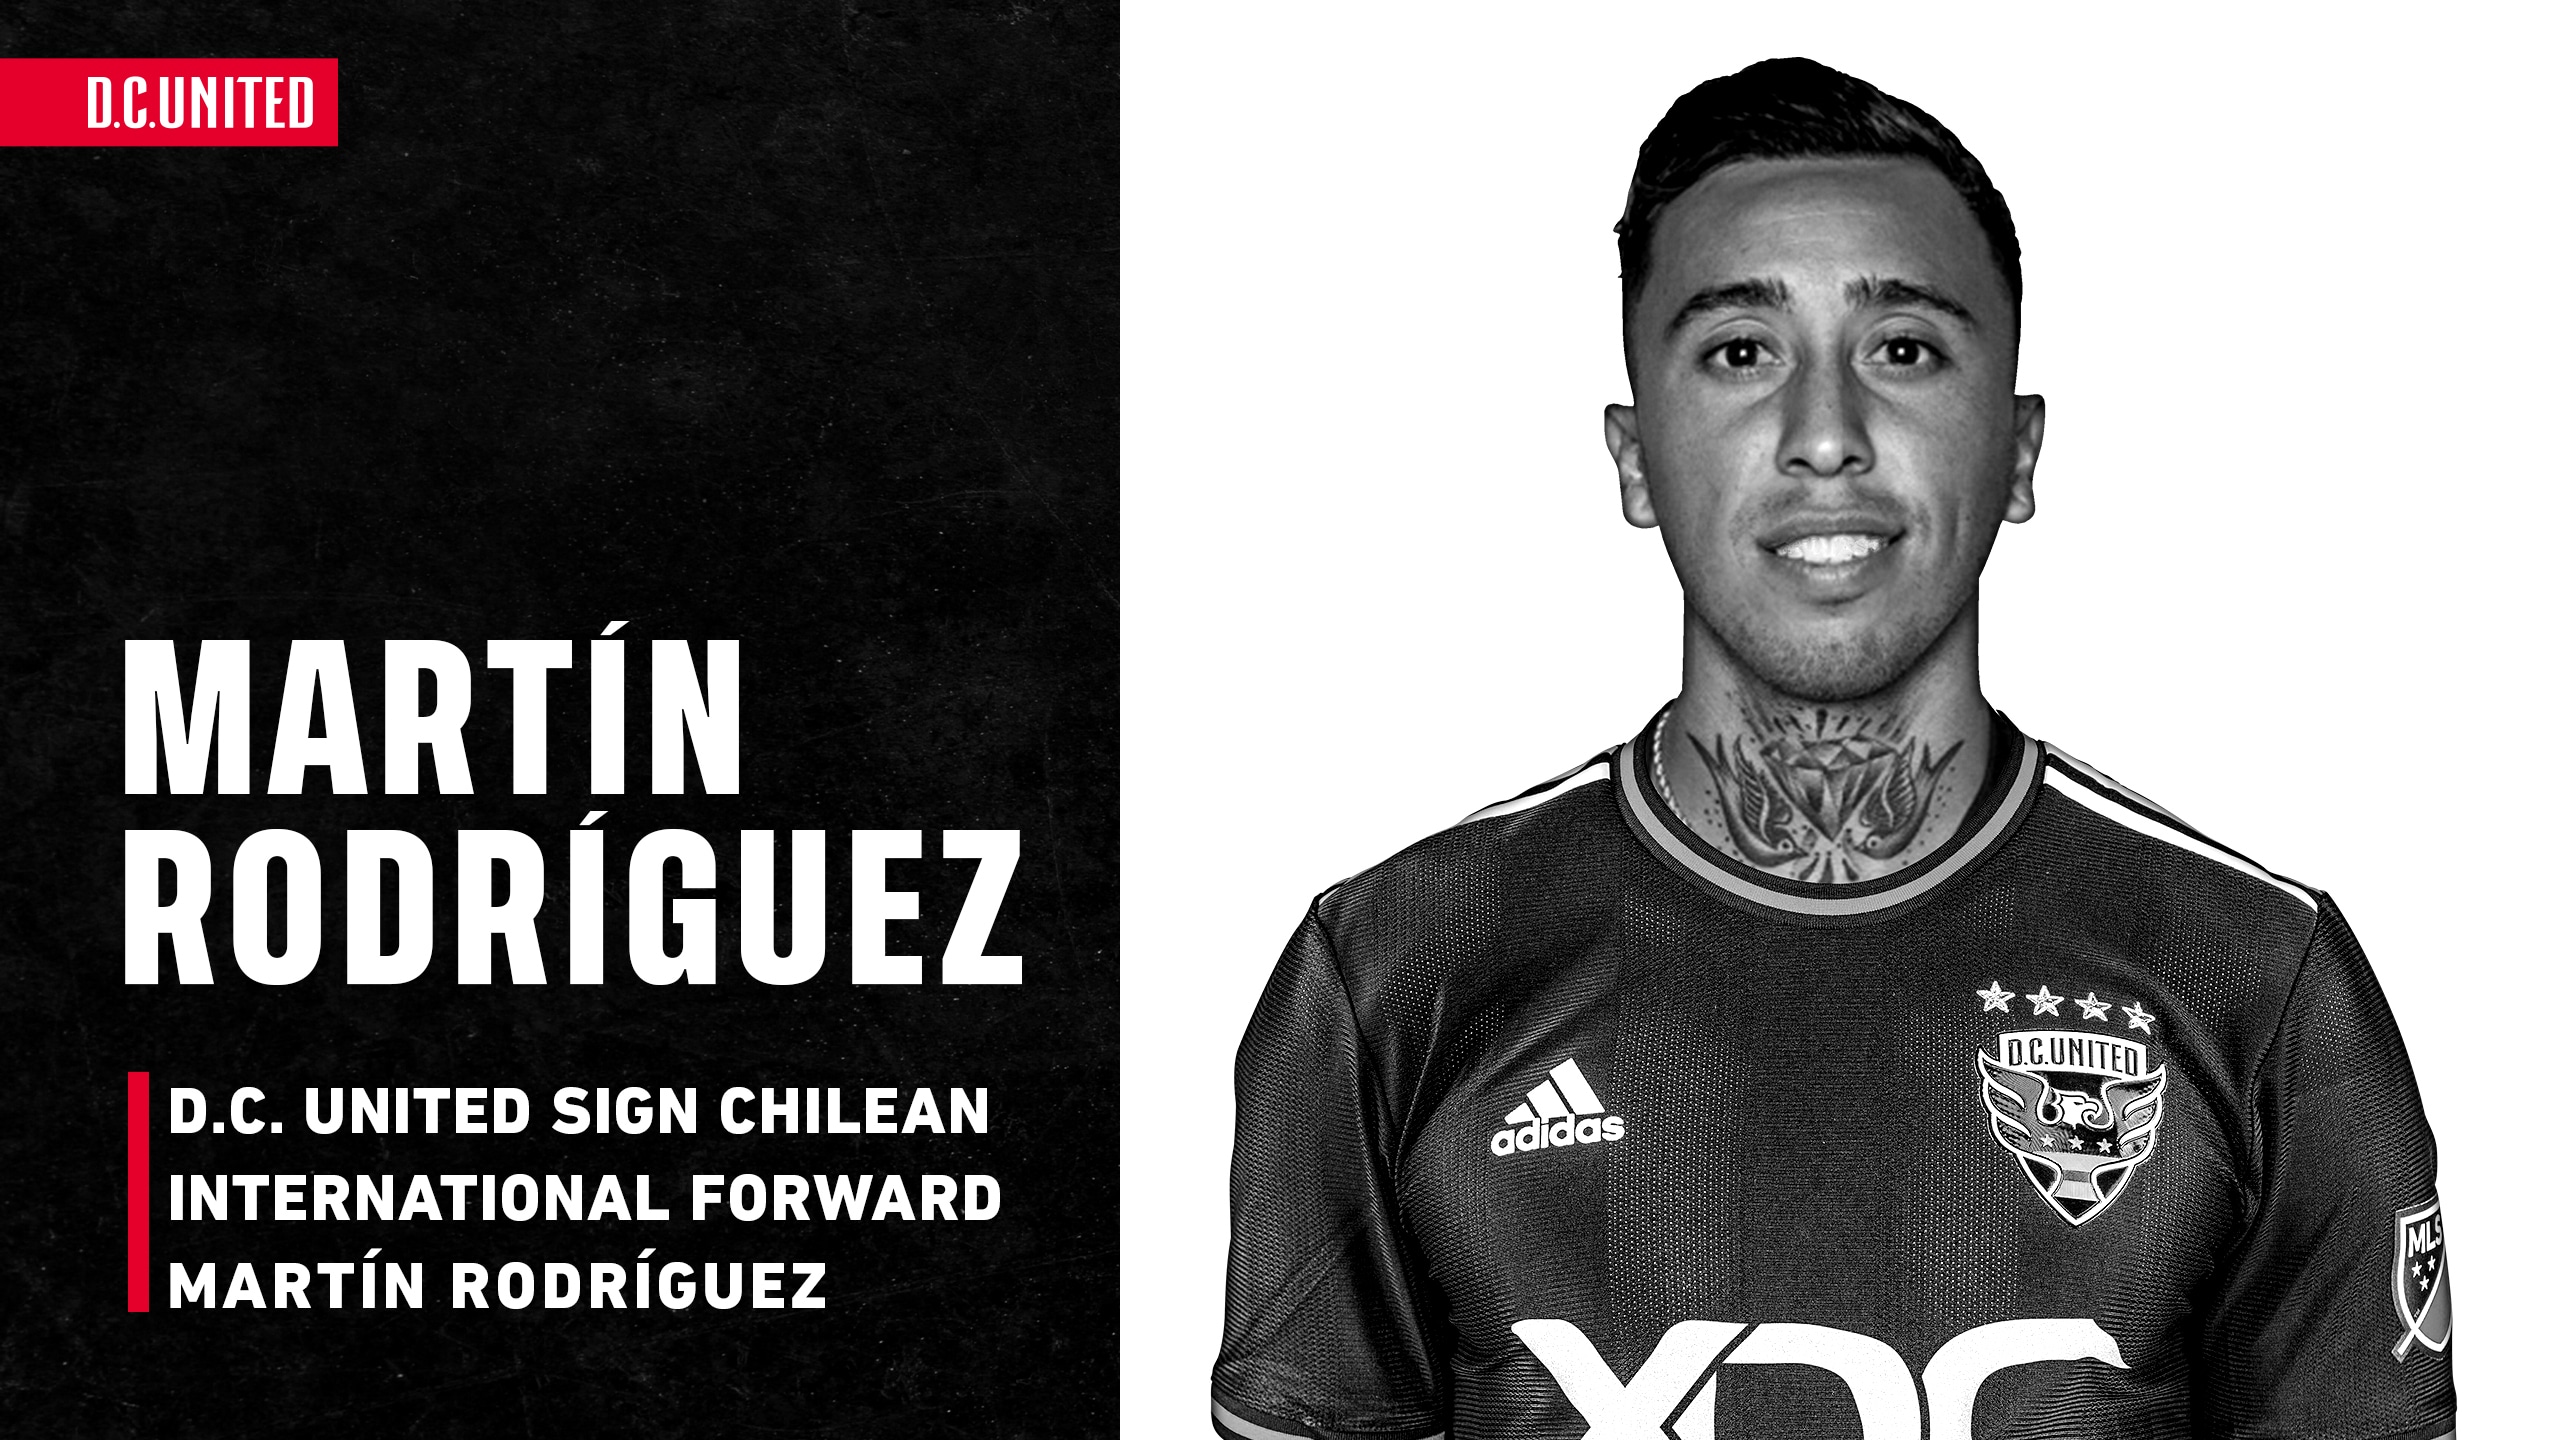 DC United adquiere al extremo chileno Martín Rodríguez utilizando fondos de asignación específica